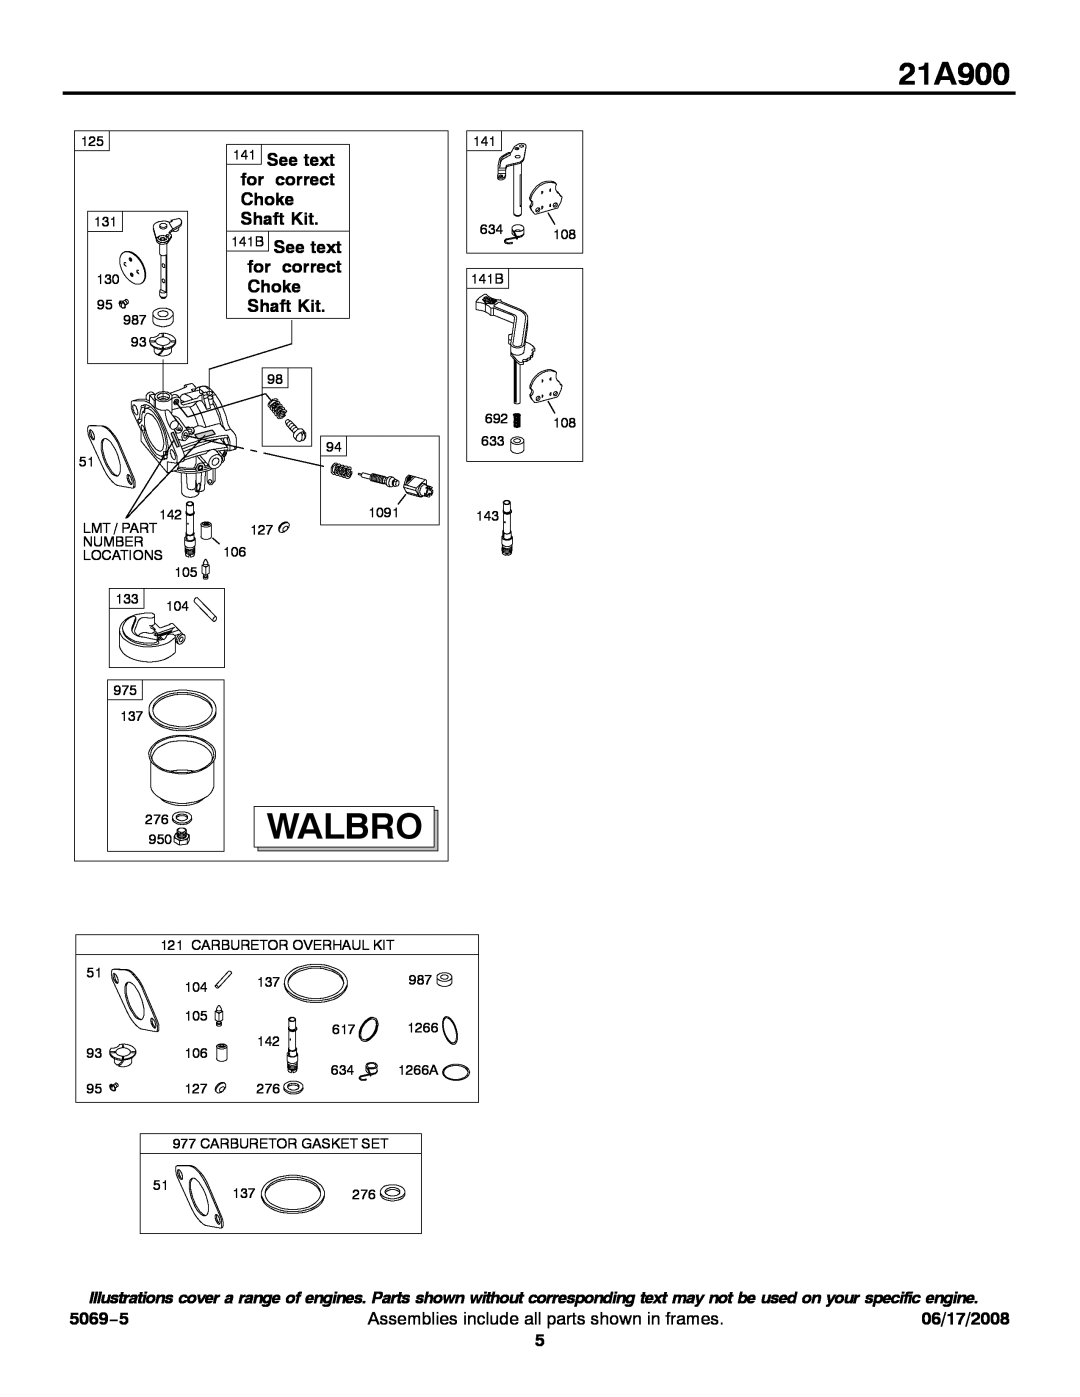 Briggs & Stratton 21A900 service manual Walbro 